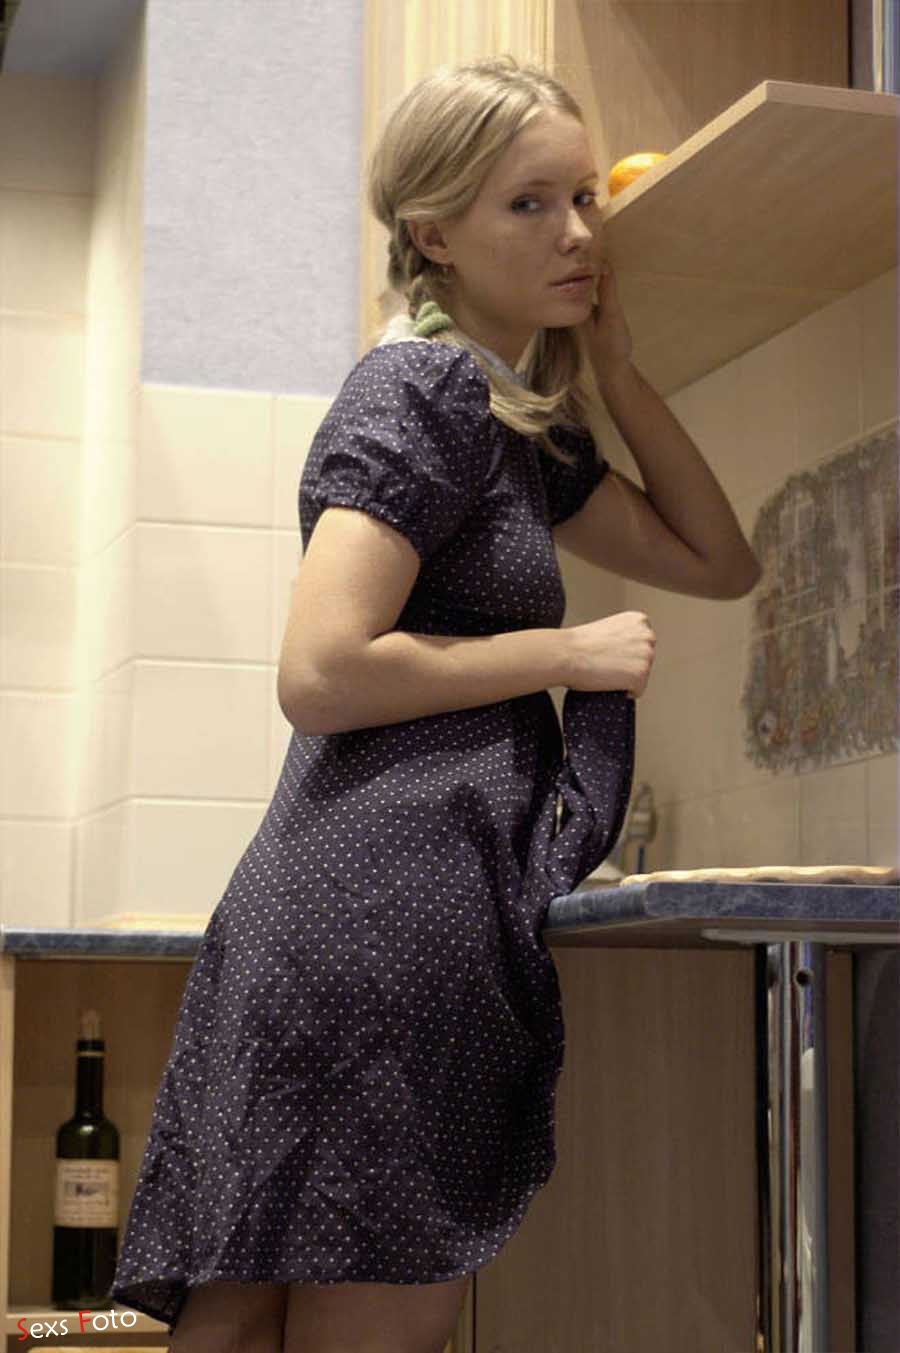 Блондинка в платье без трусов позирует на кухне (9 фото)